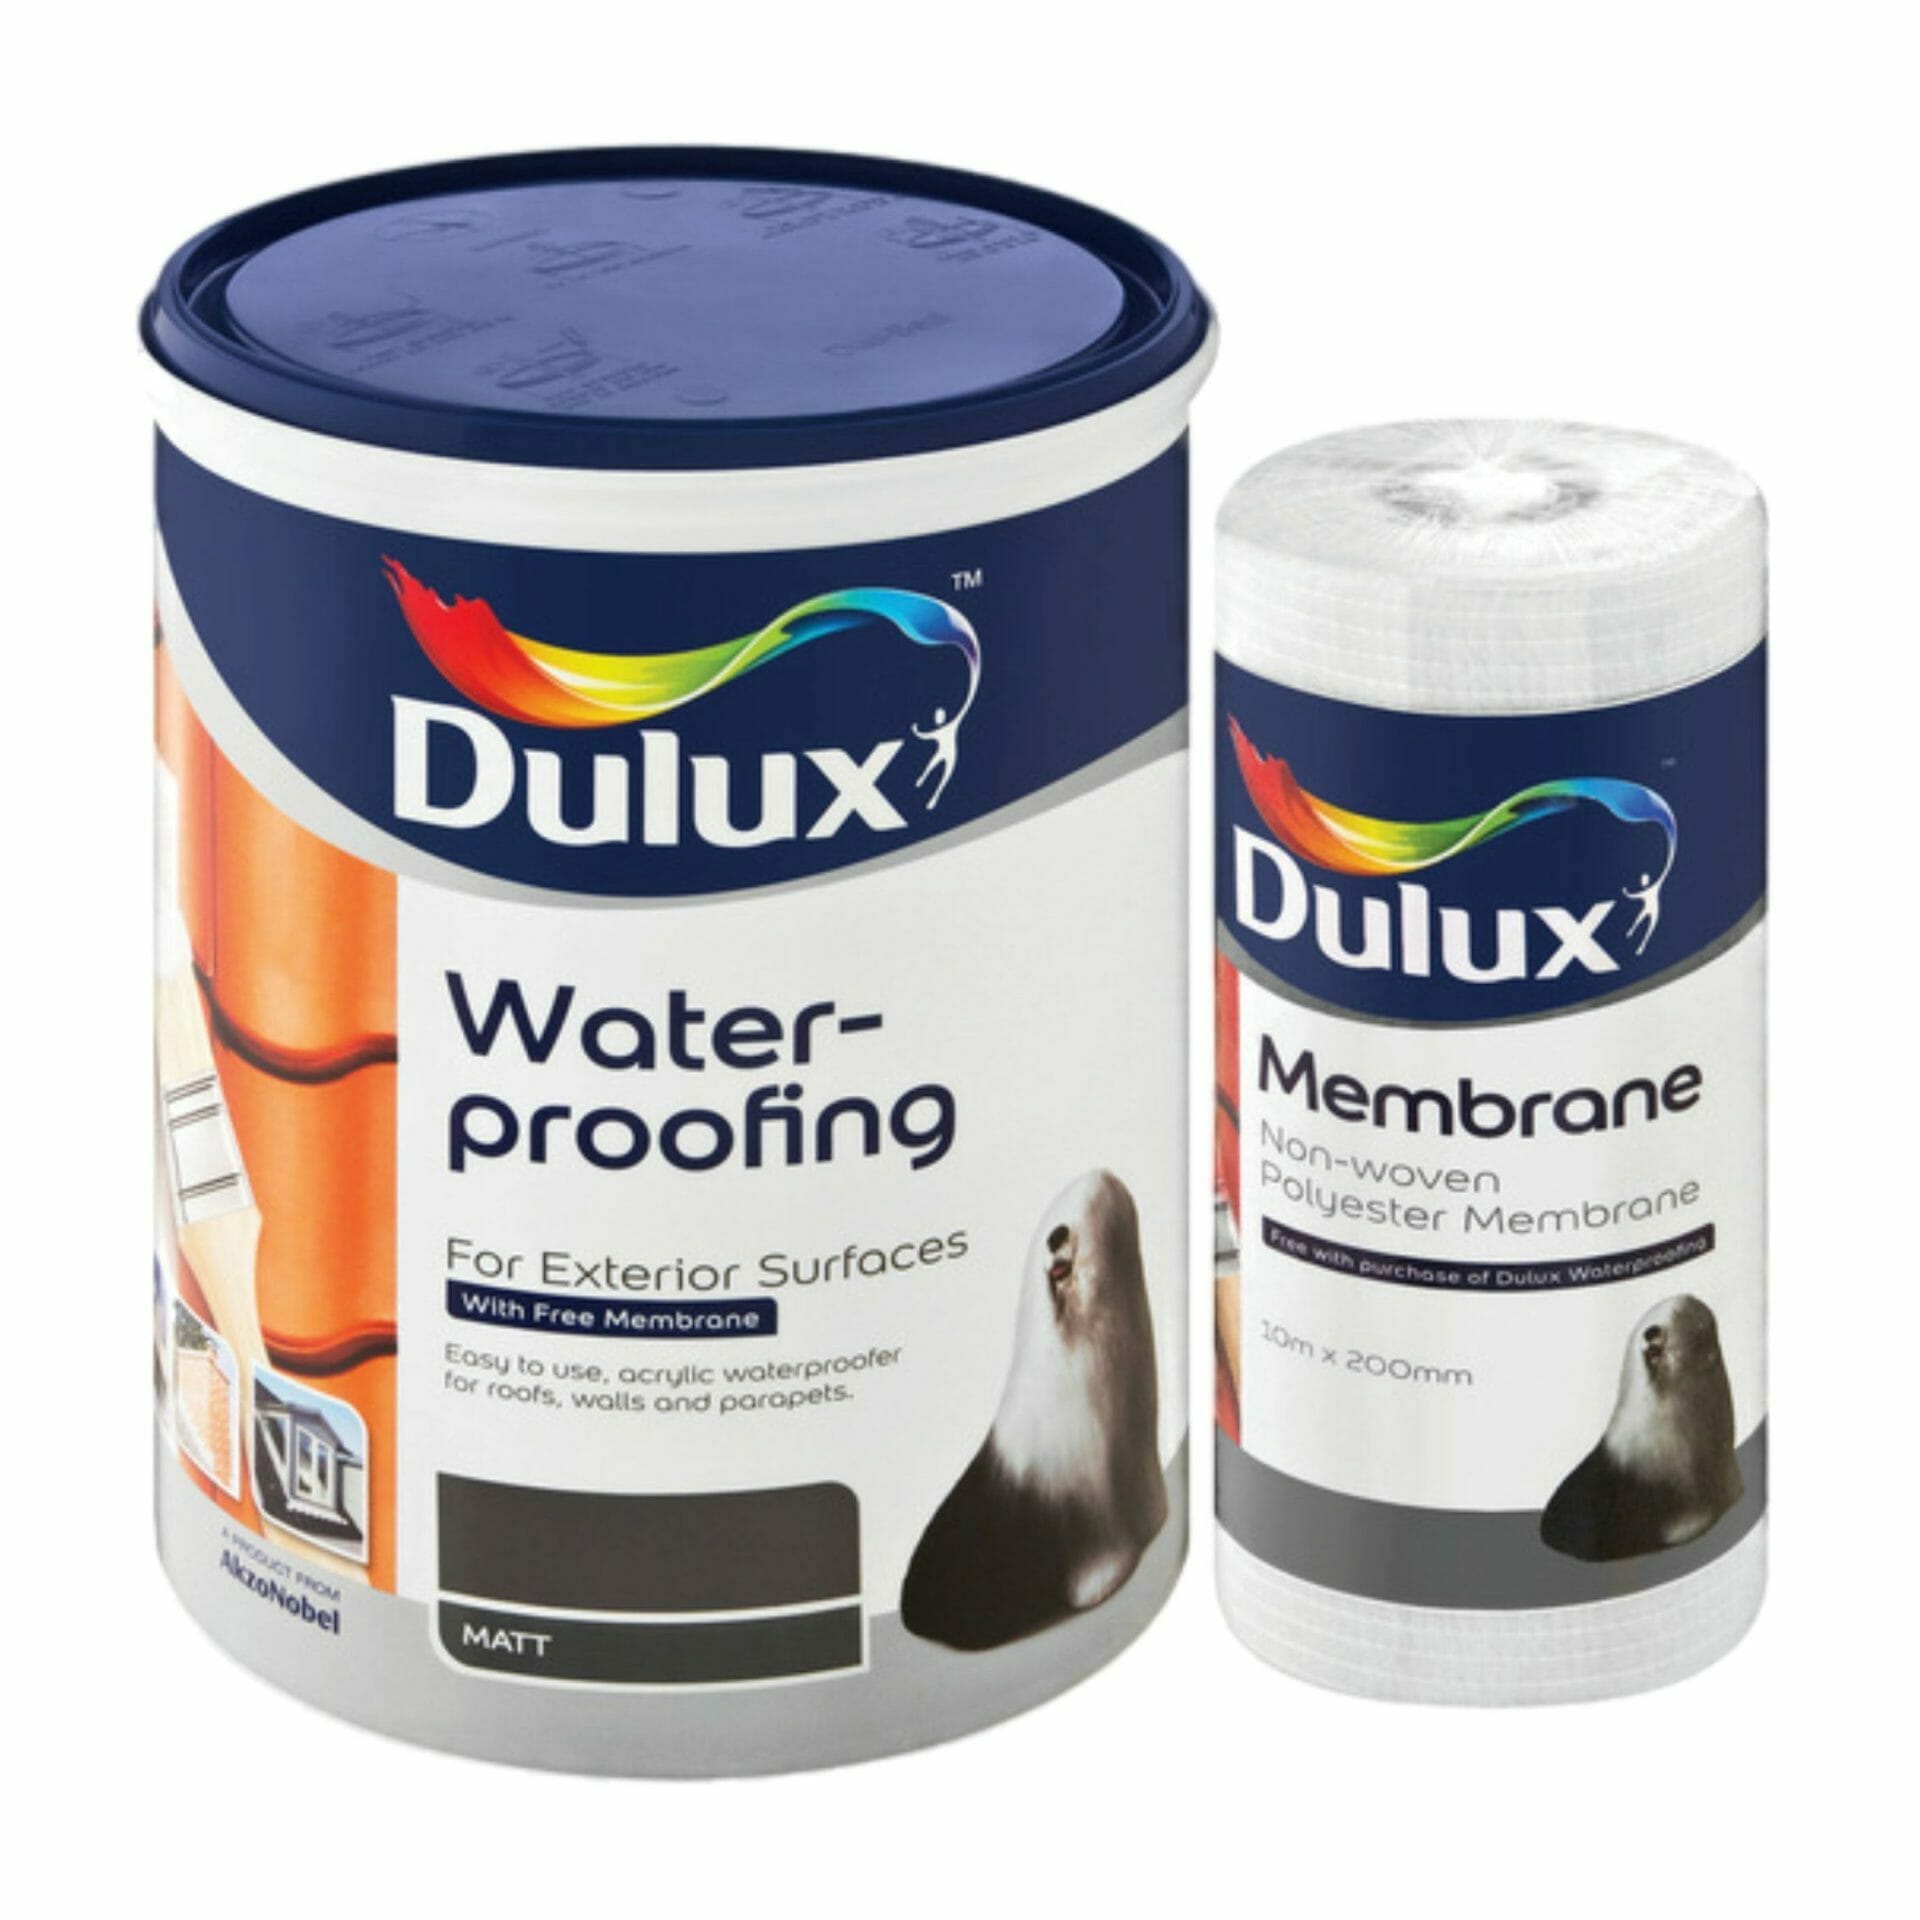 DULUX Waterproofing - Hyper Paint (Pty) Ltd